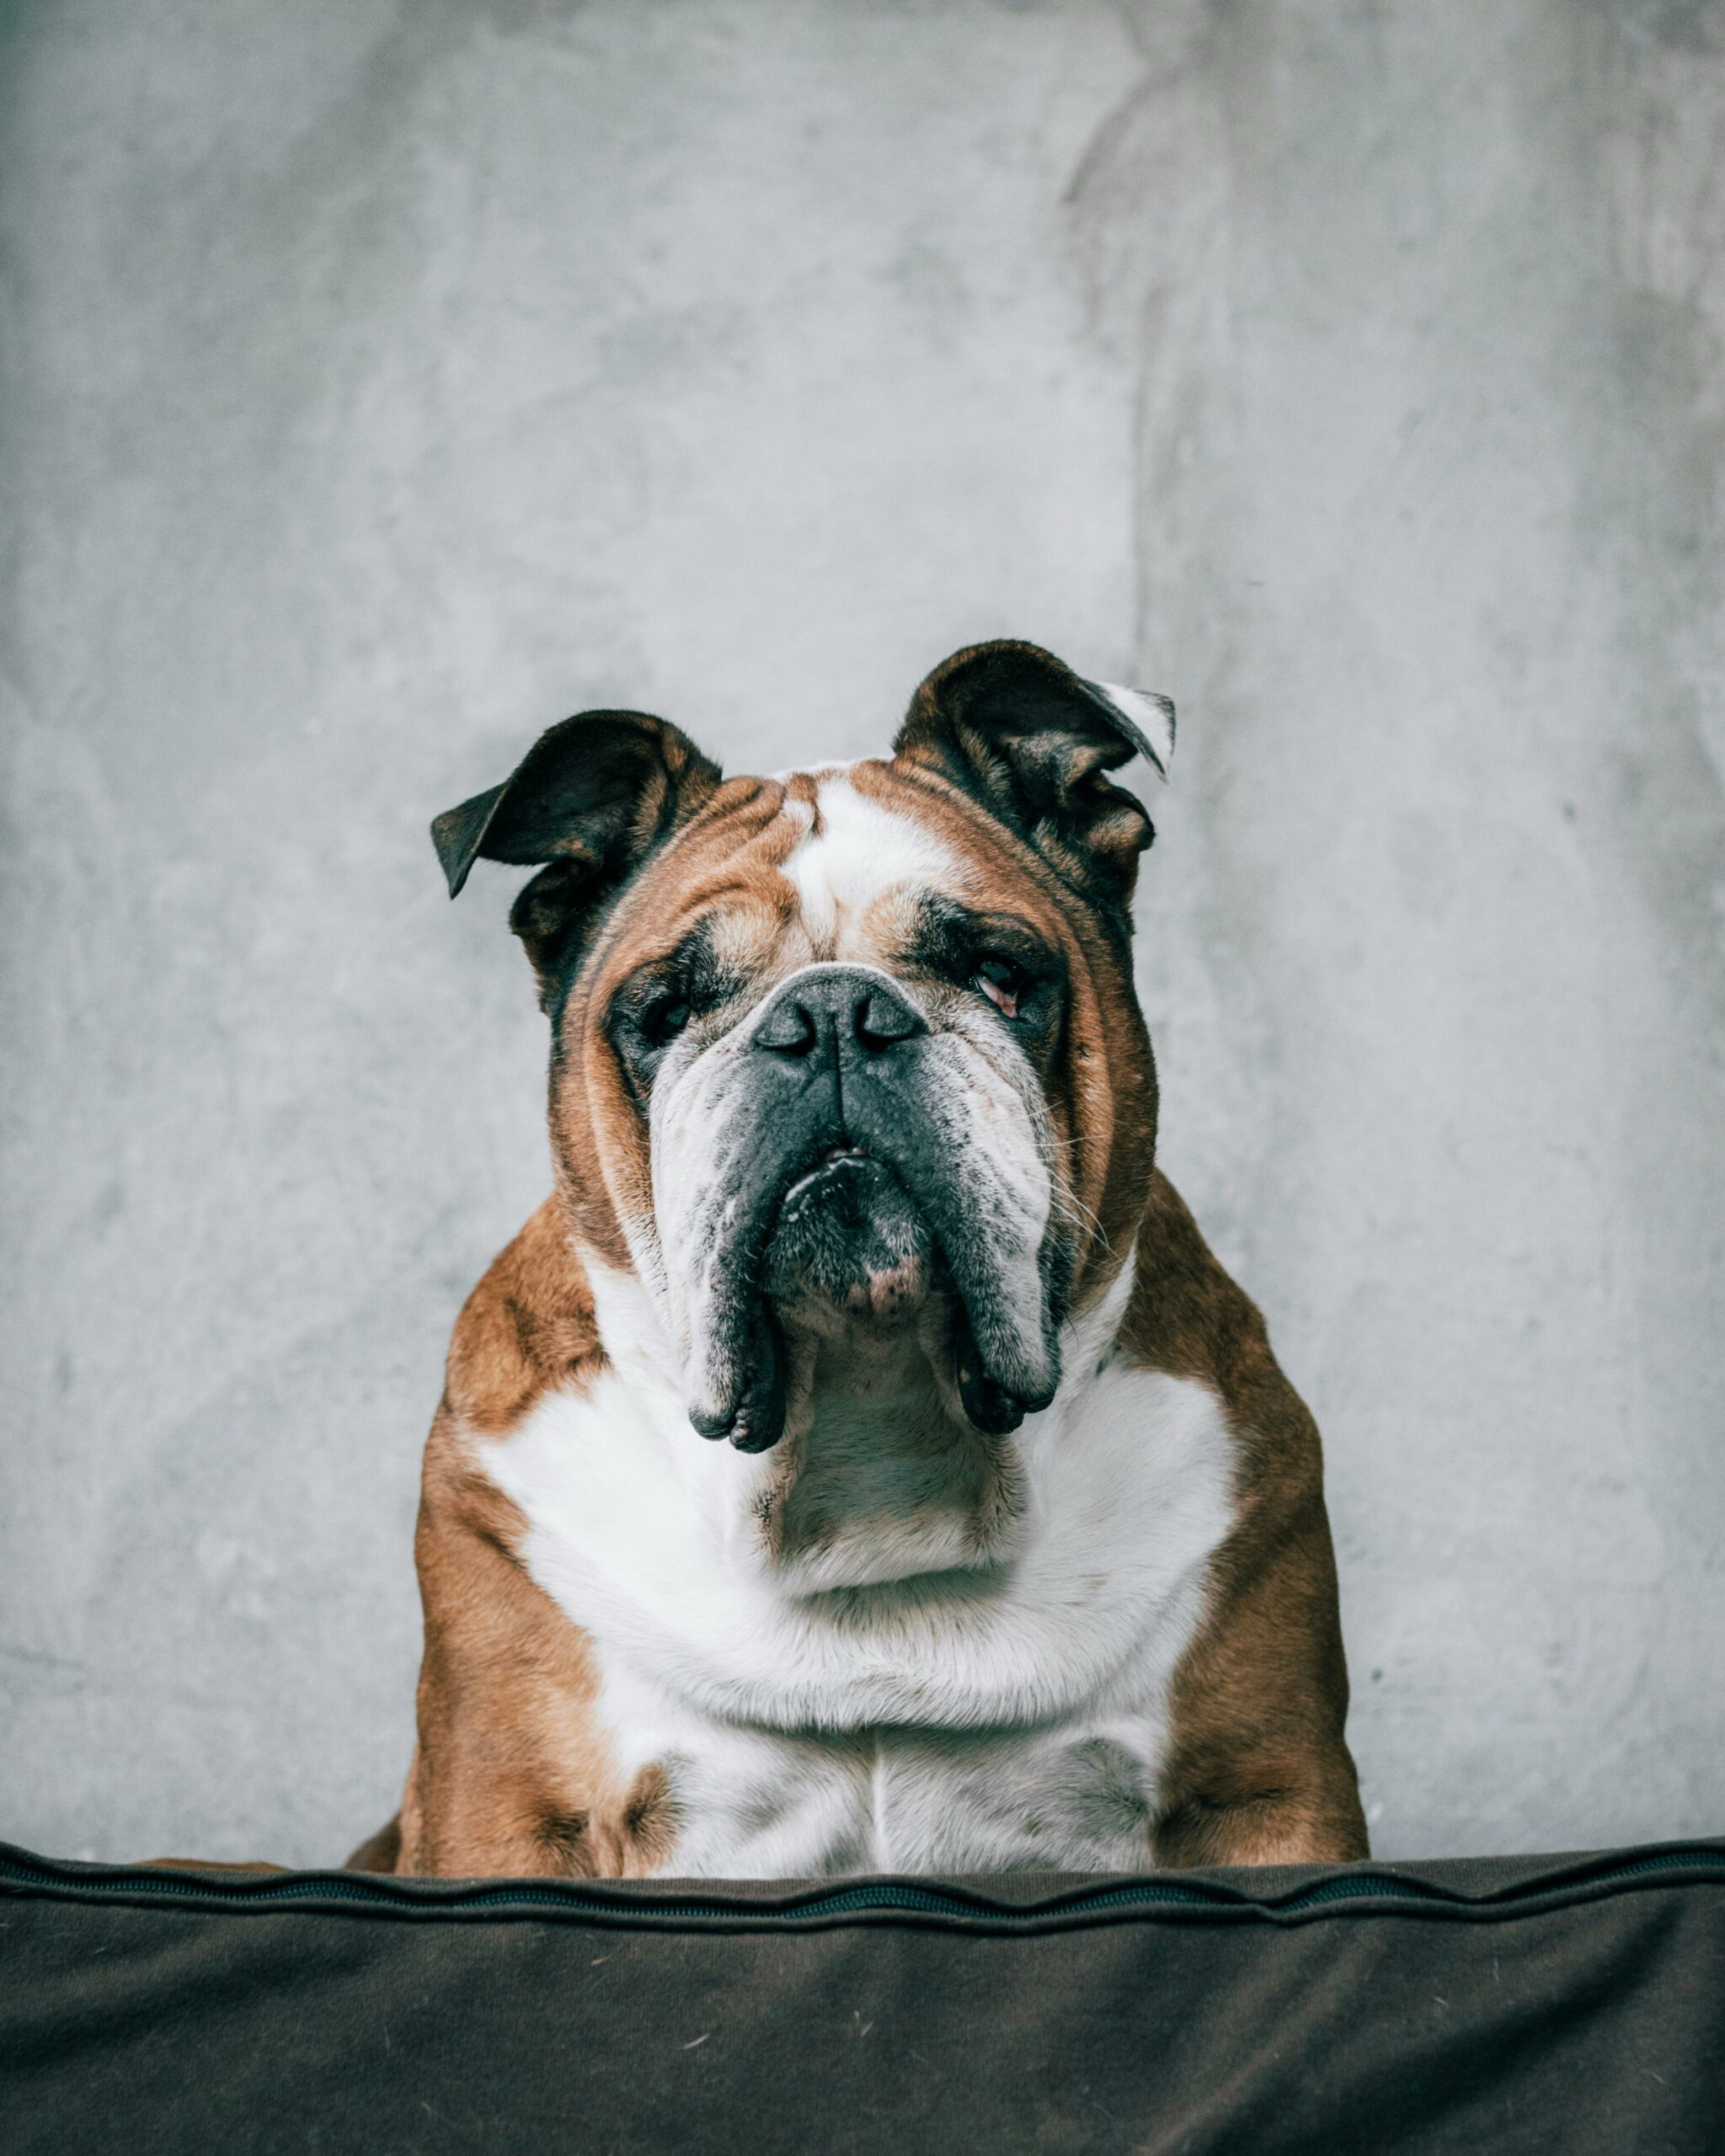 Bulldog: A Loyal Companion